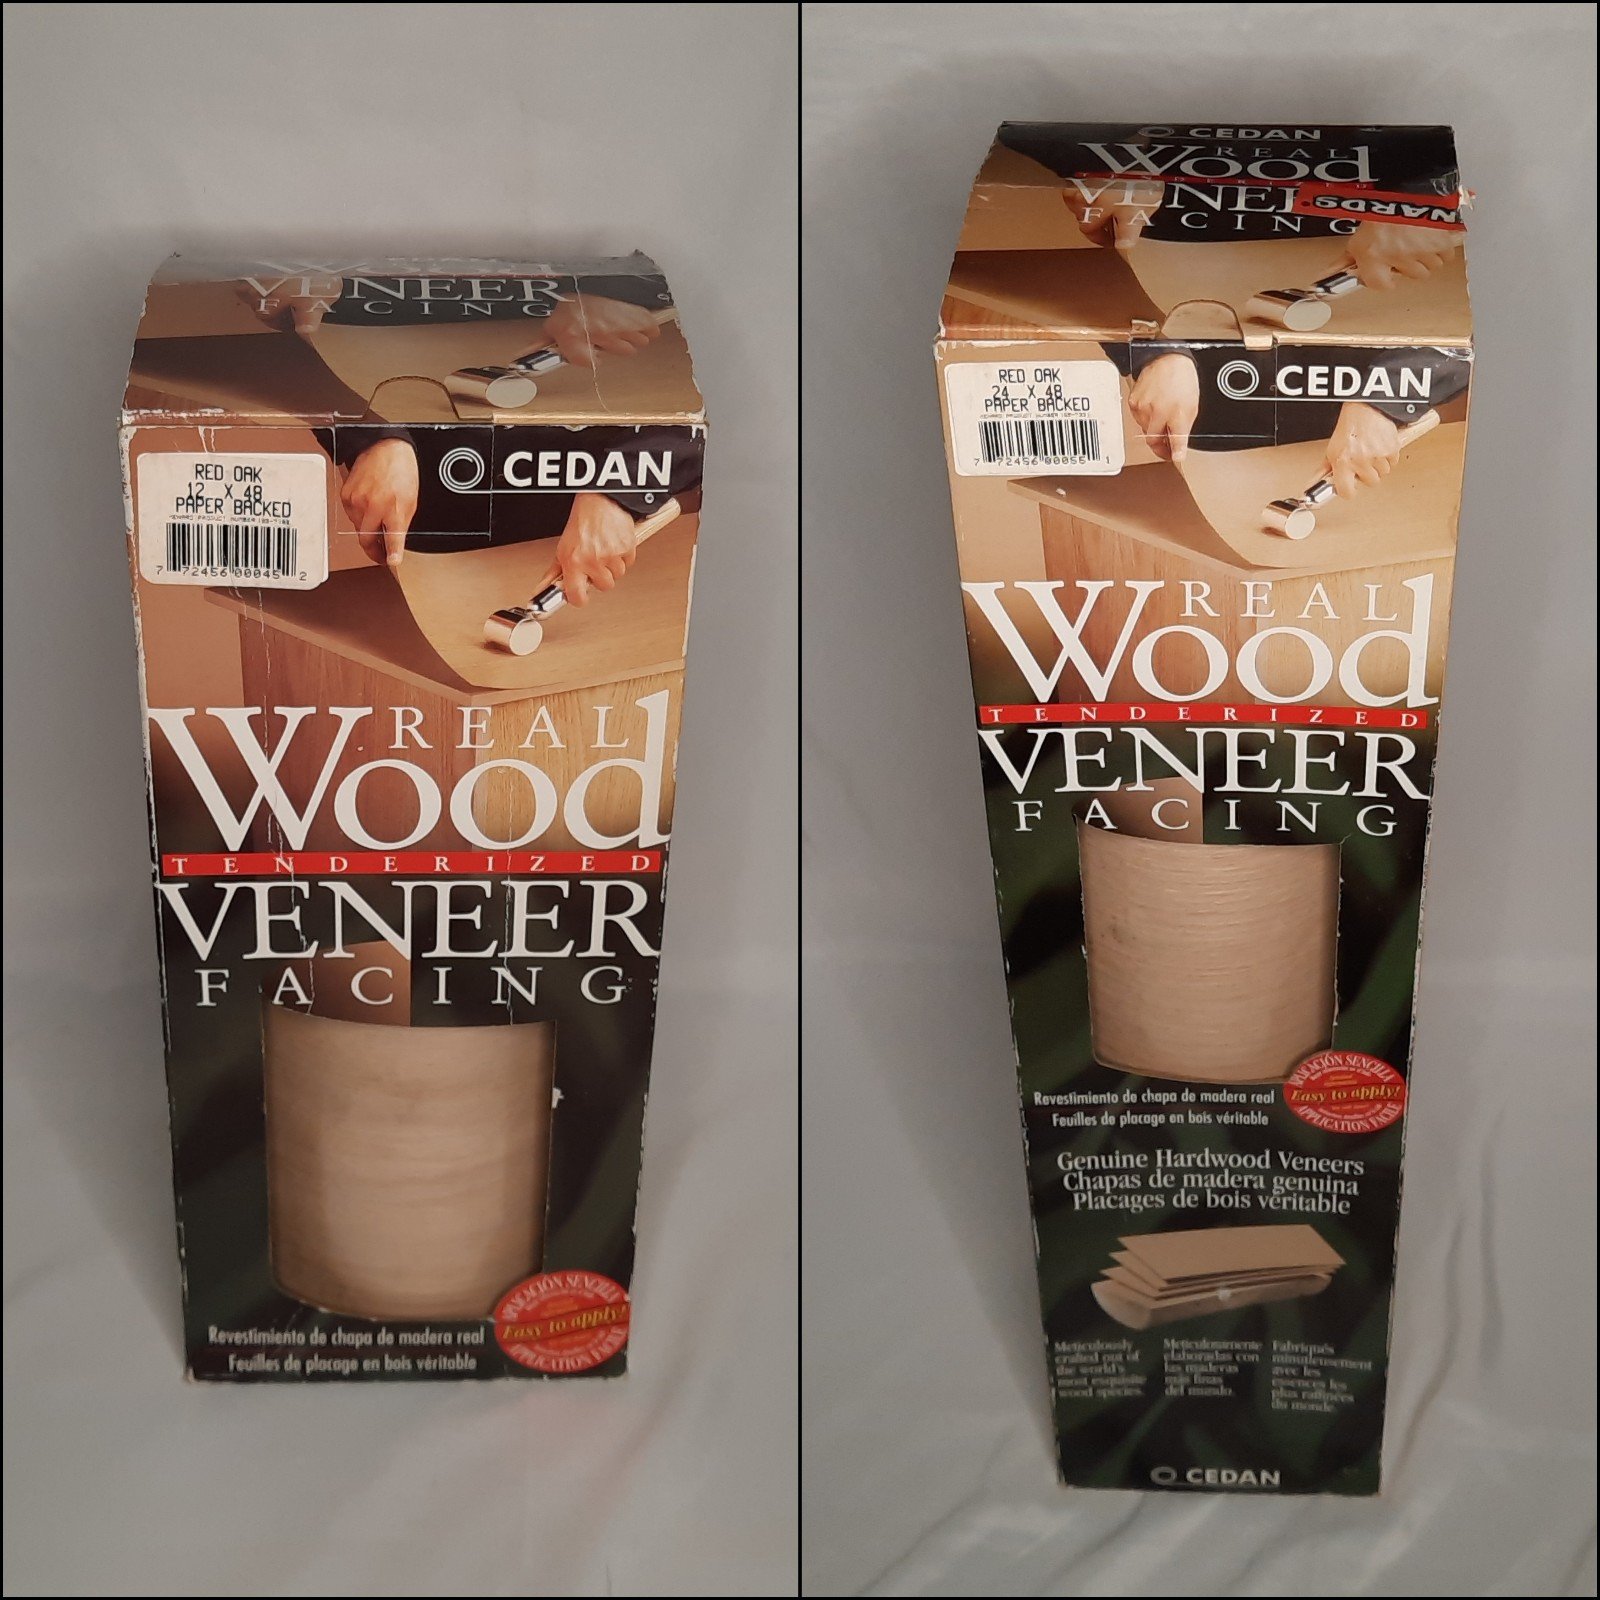 Cedan Real Wood Tenderized Veneer Facing 2 Rolls 12x48 24x48 Paper Backed meTn55AeH